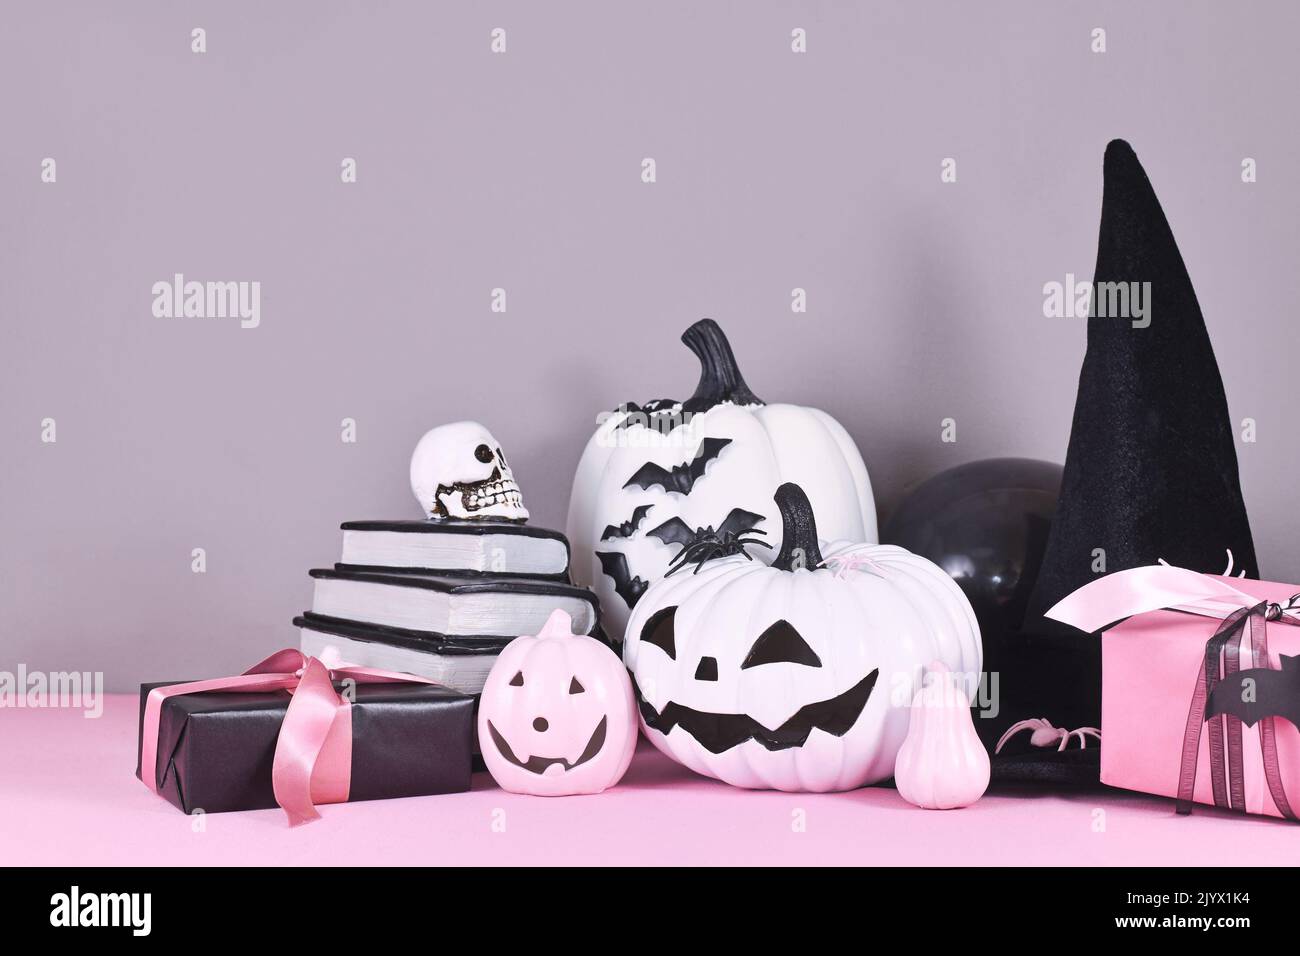 Decoración de Halloween rosa y blanco con calabazas en blanco y negro, sombrero de bruja y libros con hechizos sobre fondo gris Foto de stock